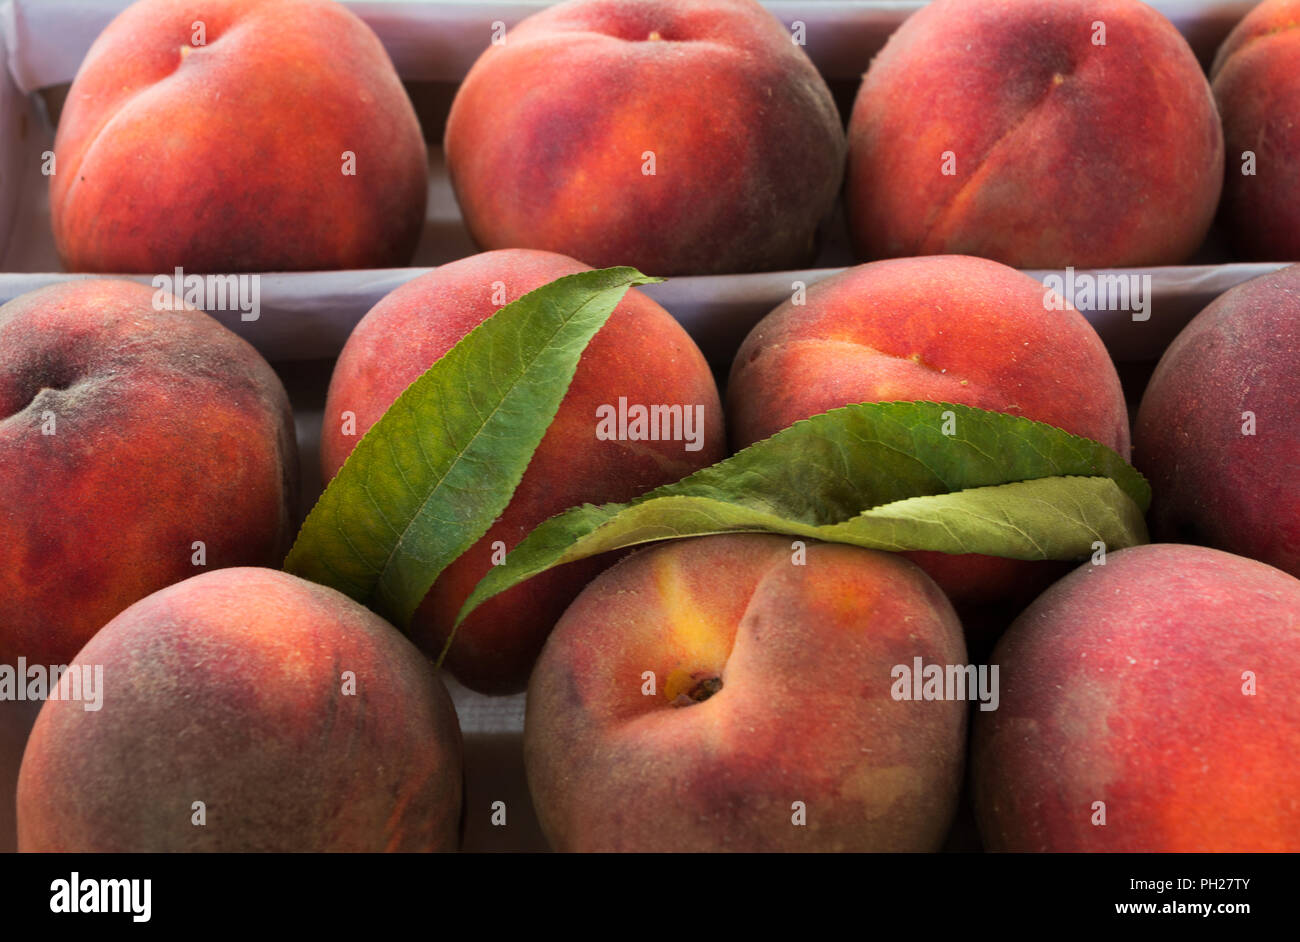 Rosso fresco freestone peach background come abbondanza simbolo del raccolto. Uno stile di vita sano concetto con frutti maturi Foto Stock